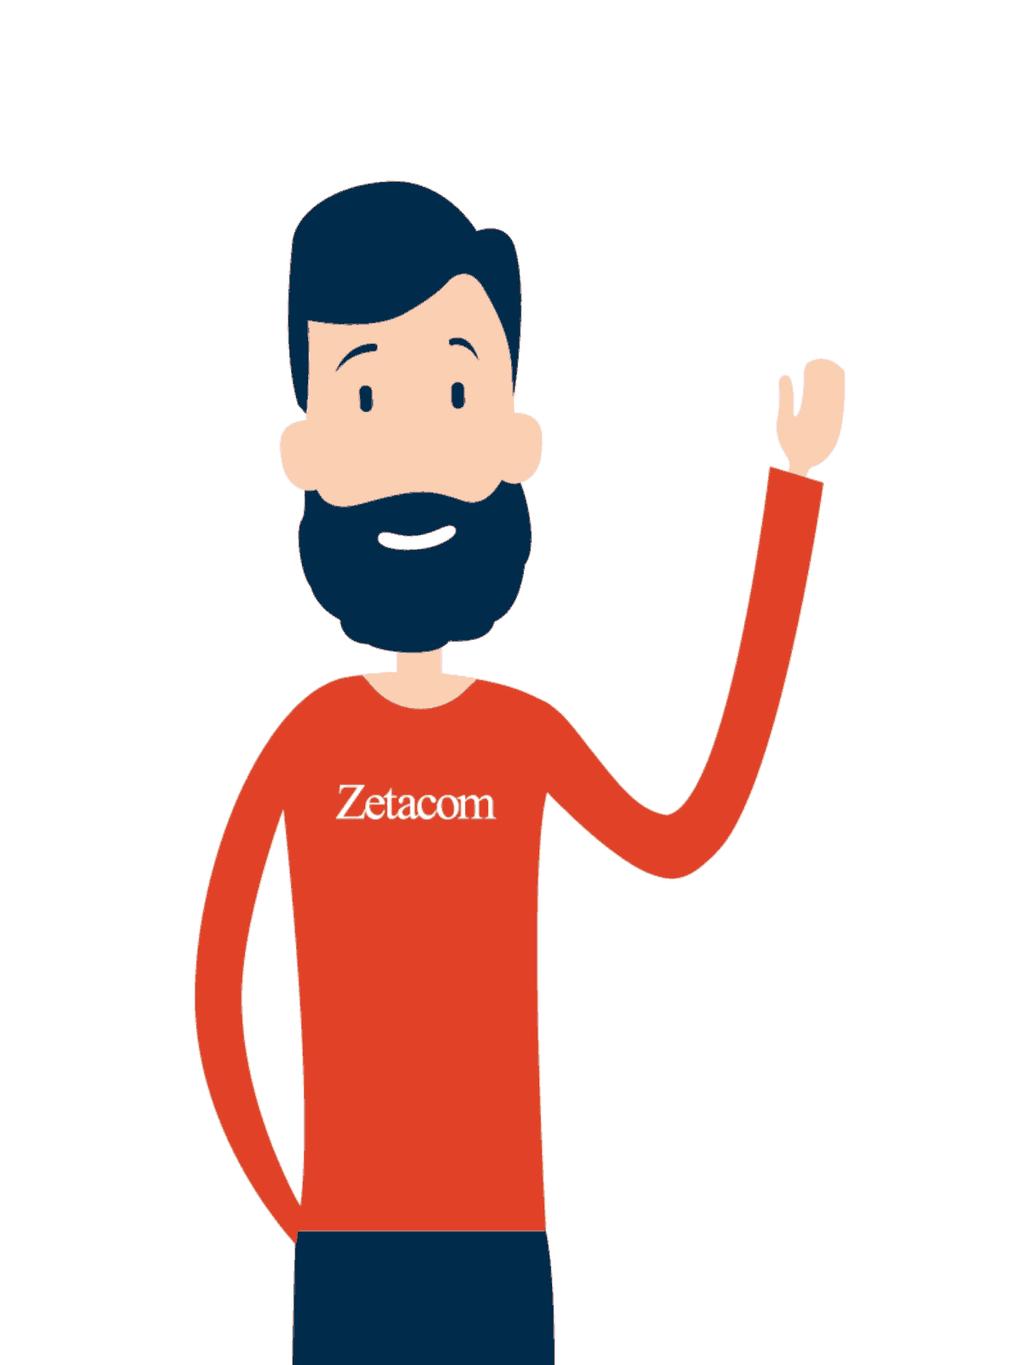 Zetacom helpt als ICT specialist